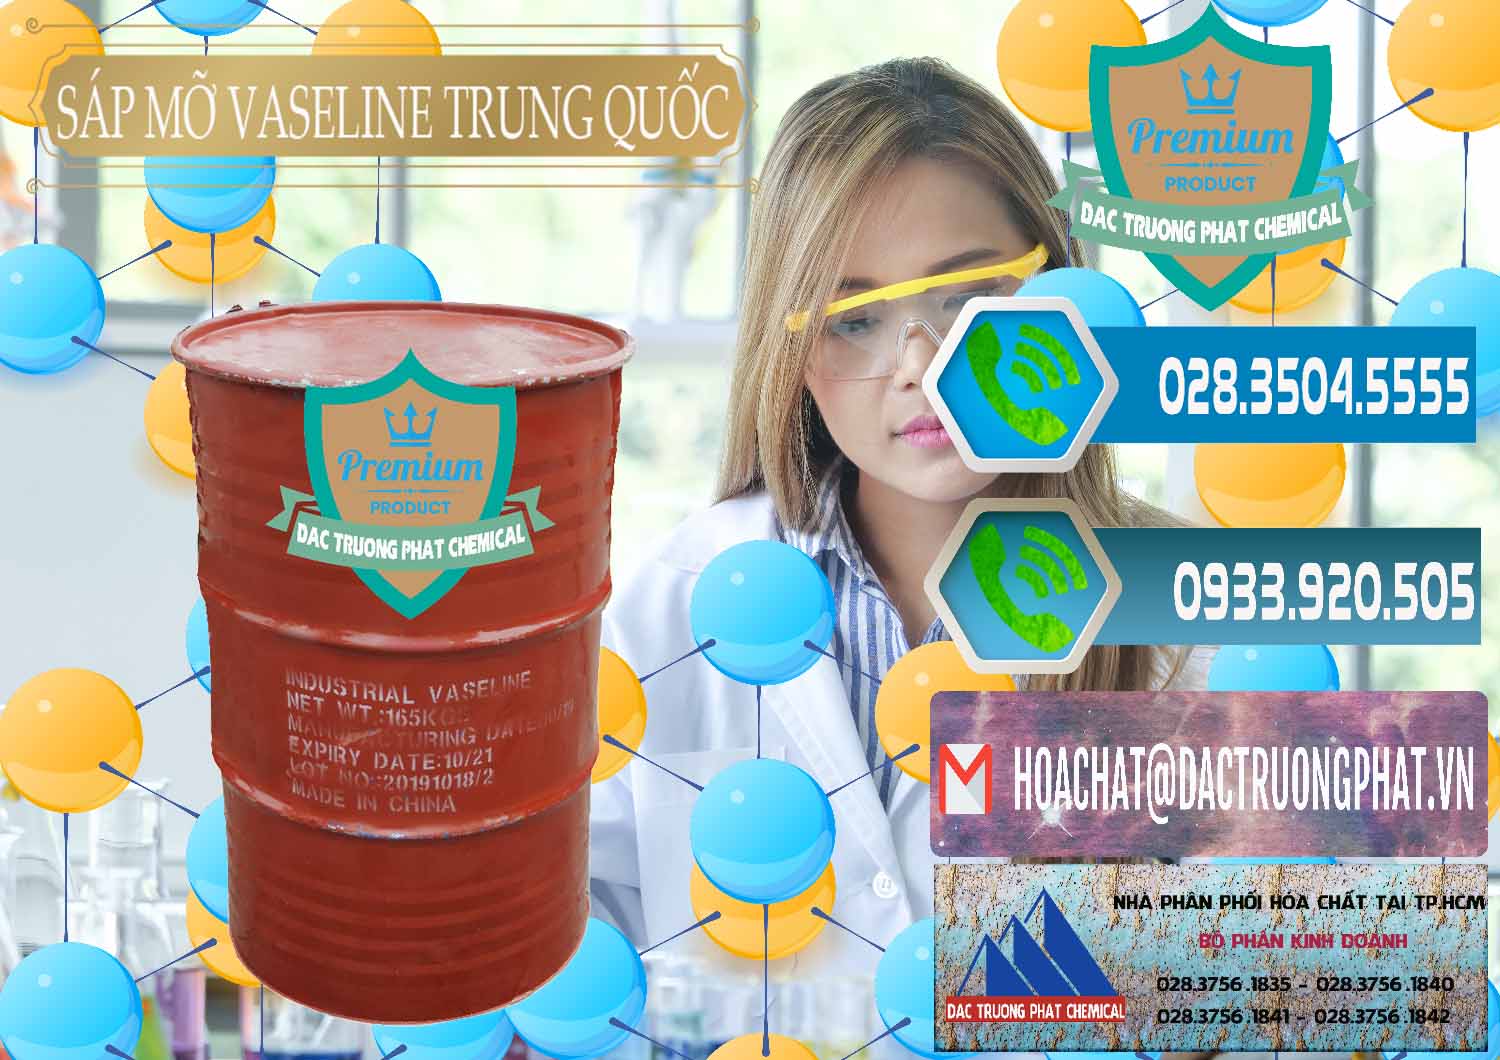 Cty chuyên bán - phân phối Sáp Mỡ Vaseline Trung Quốc China - 0122 - Nơi chuyên nhập khẩu _ cung cấp hóa chất tại TP.HCM - congtyhoachat.net